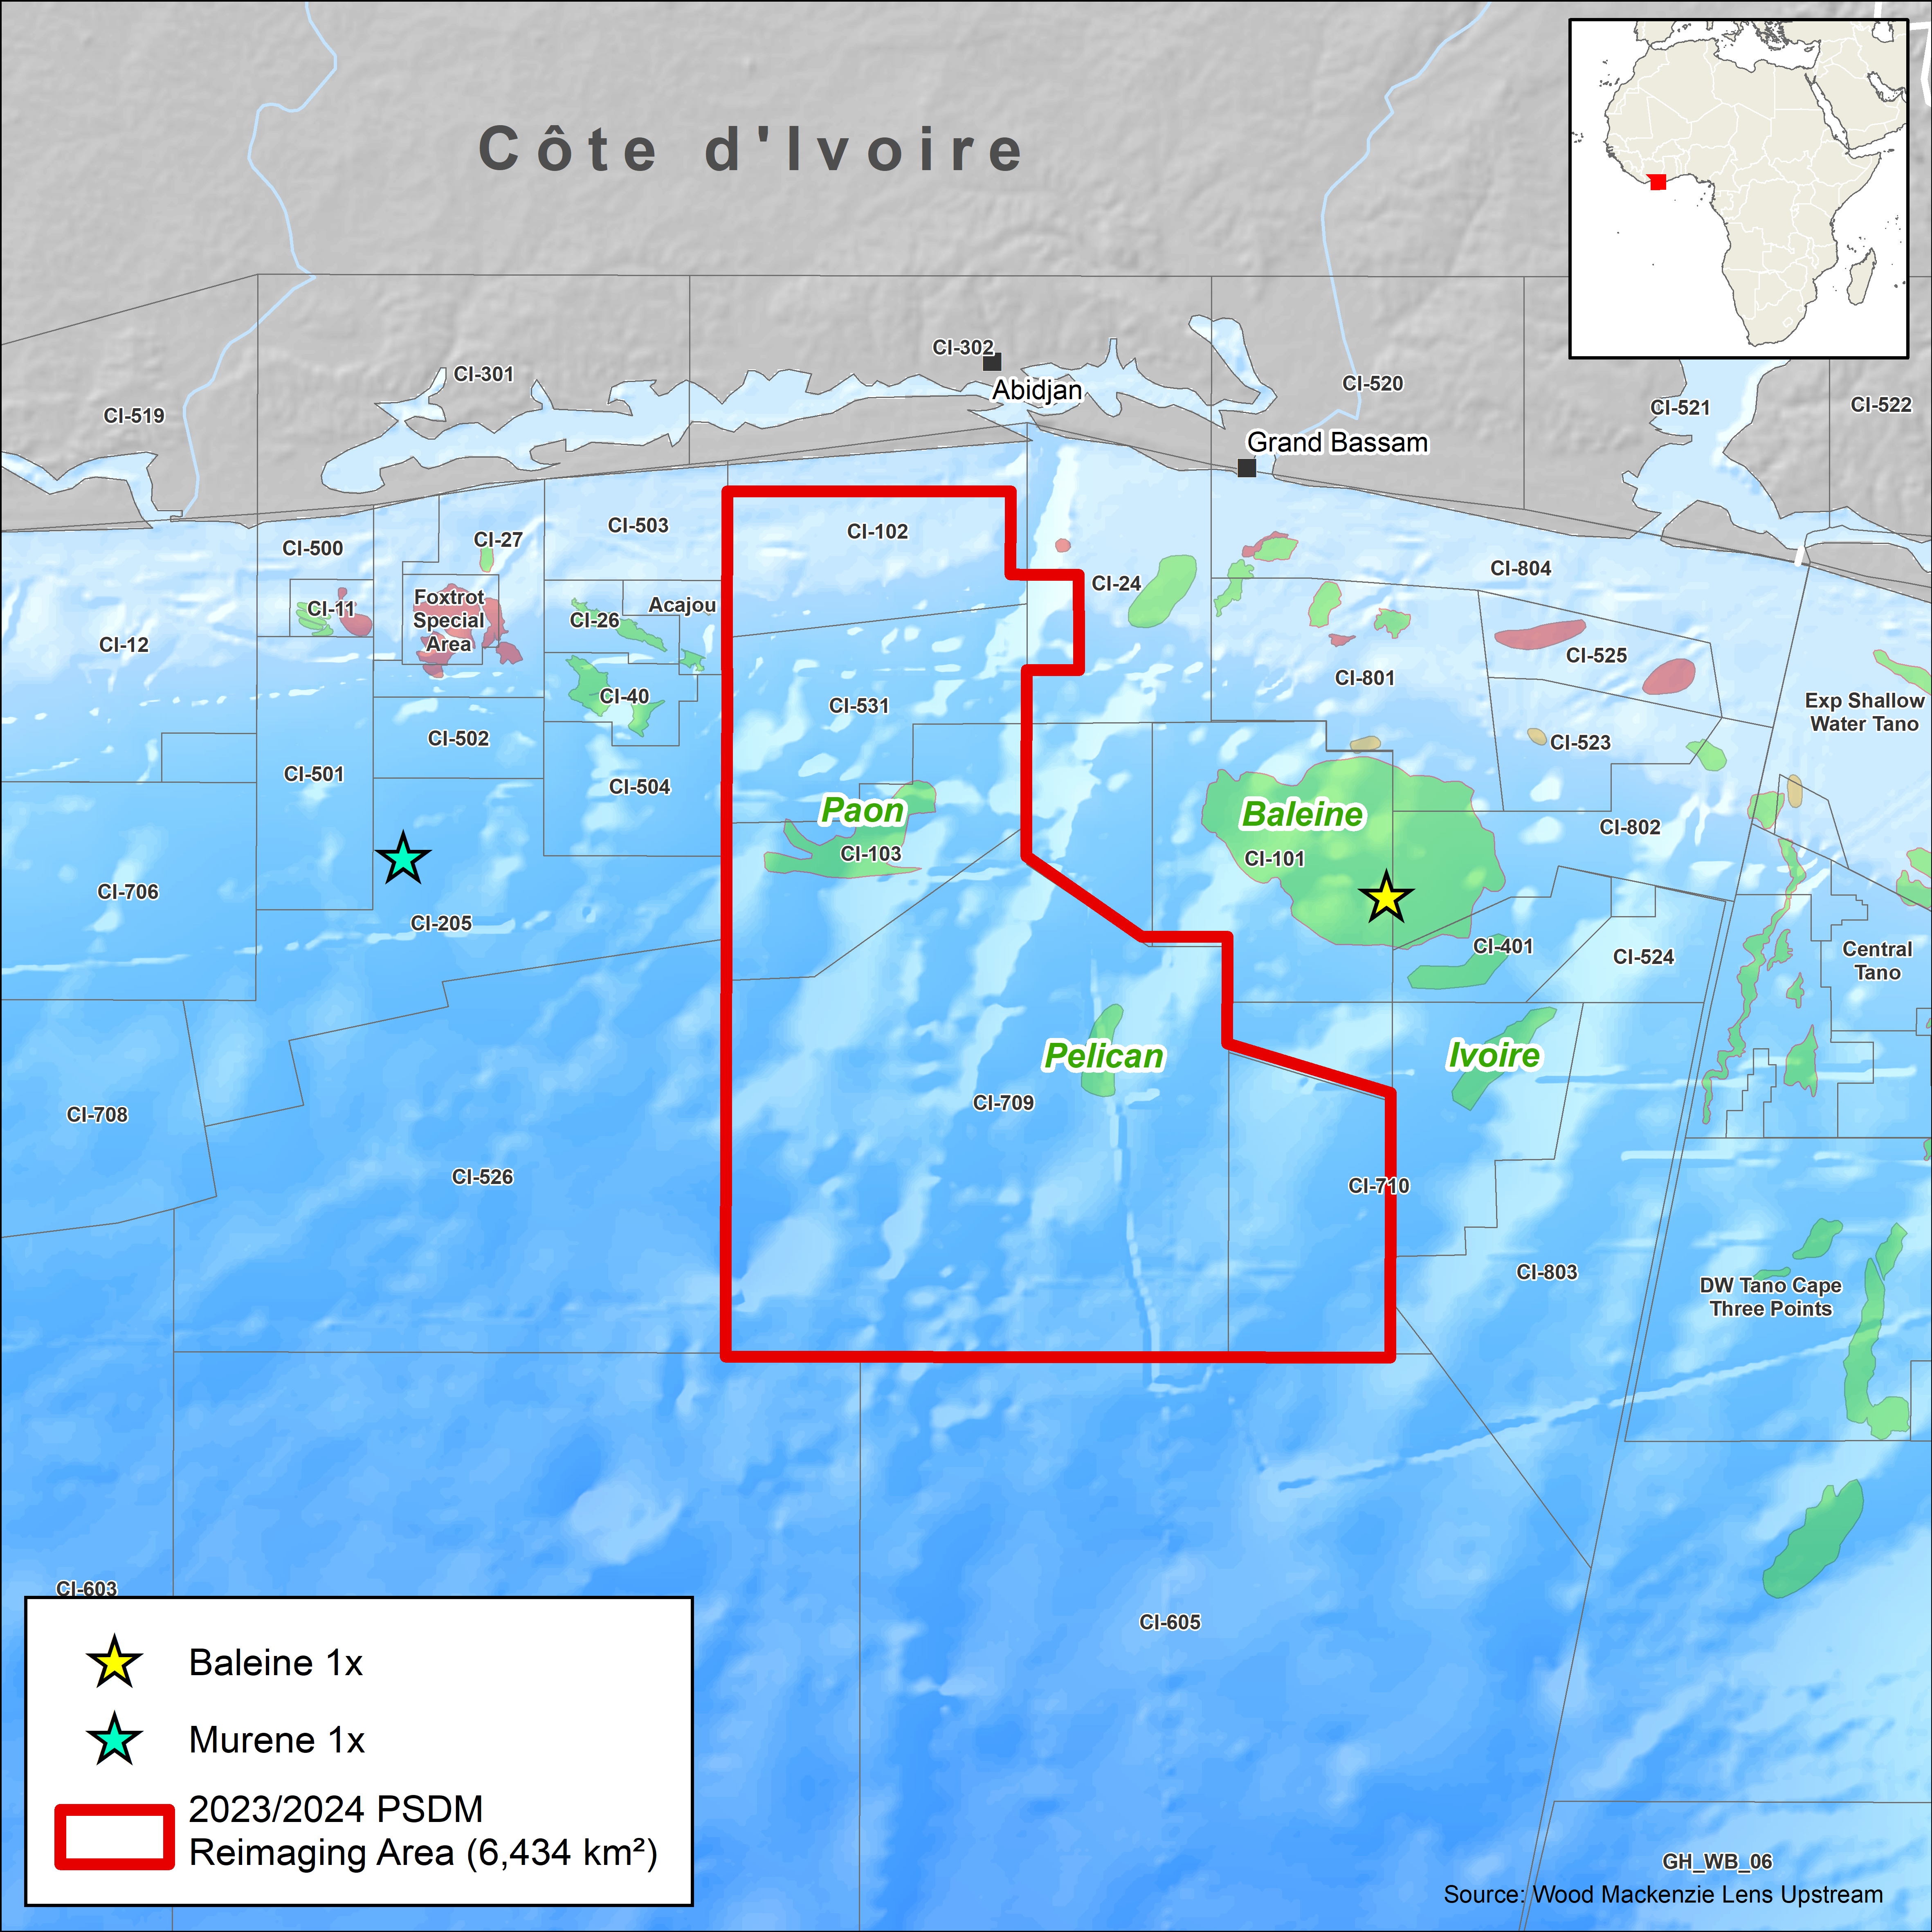 CGG's offshore CDI seismic data coverage